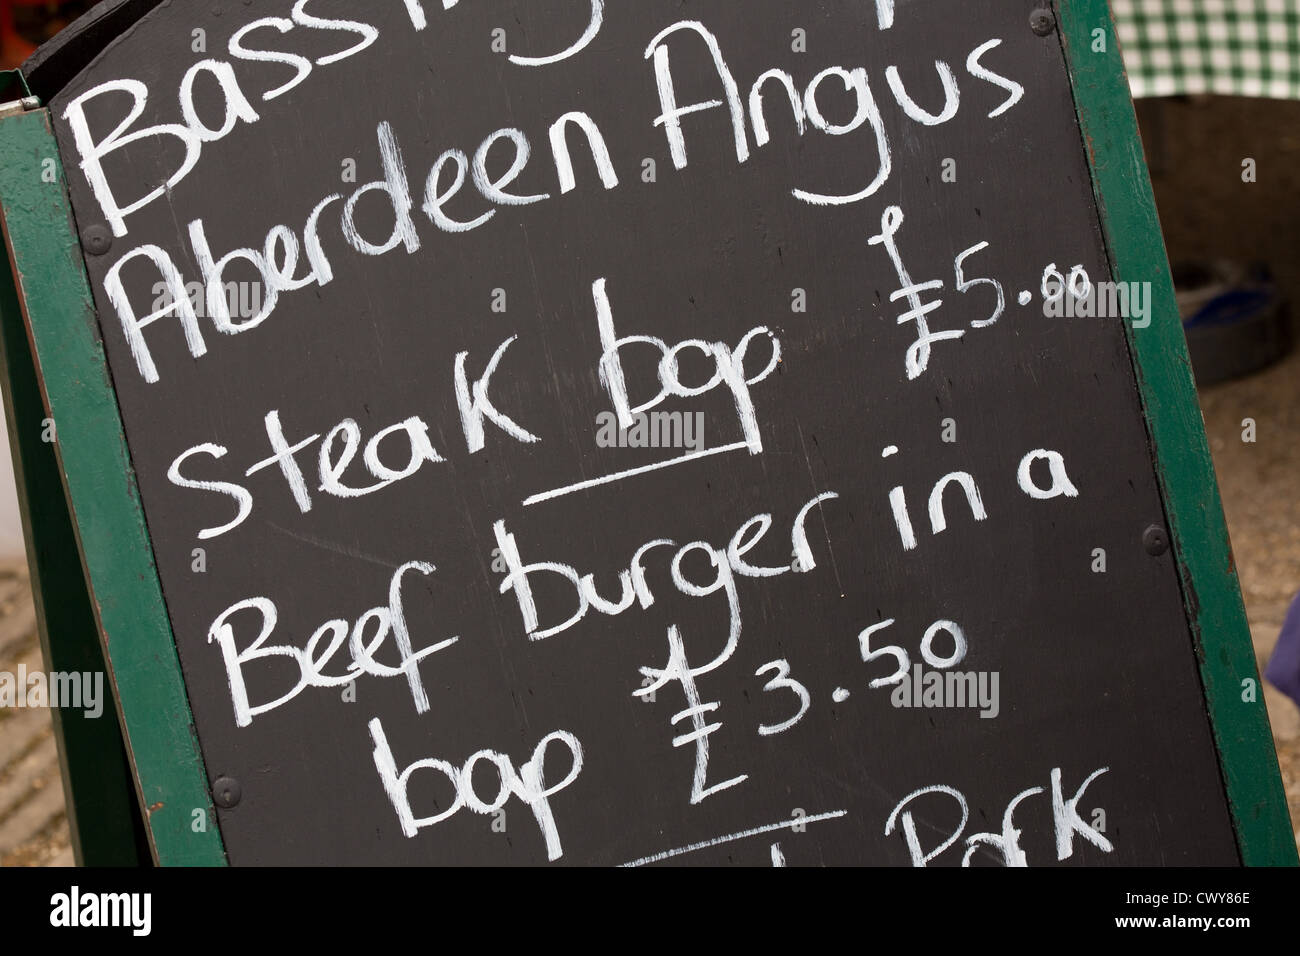 Segno in un mercato degli agricoltori pubblicità Aberdeen Angus Steak Bap e hamburger di manzo Foto Stock